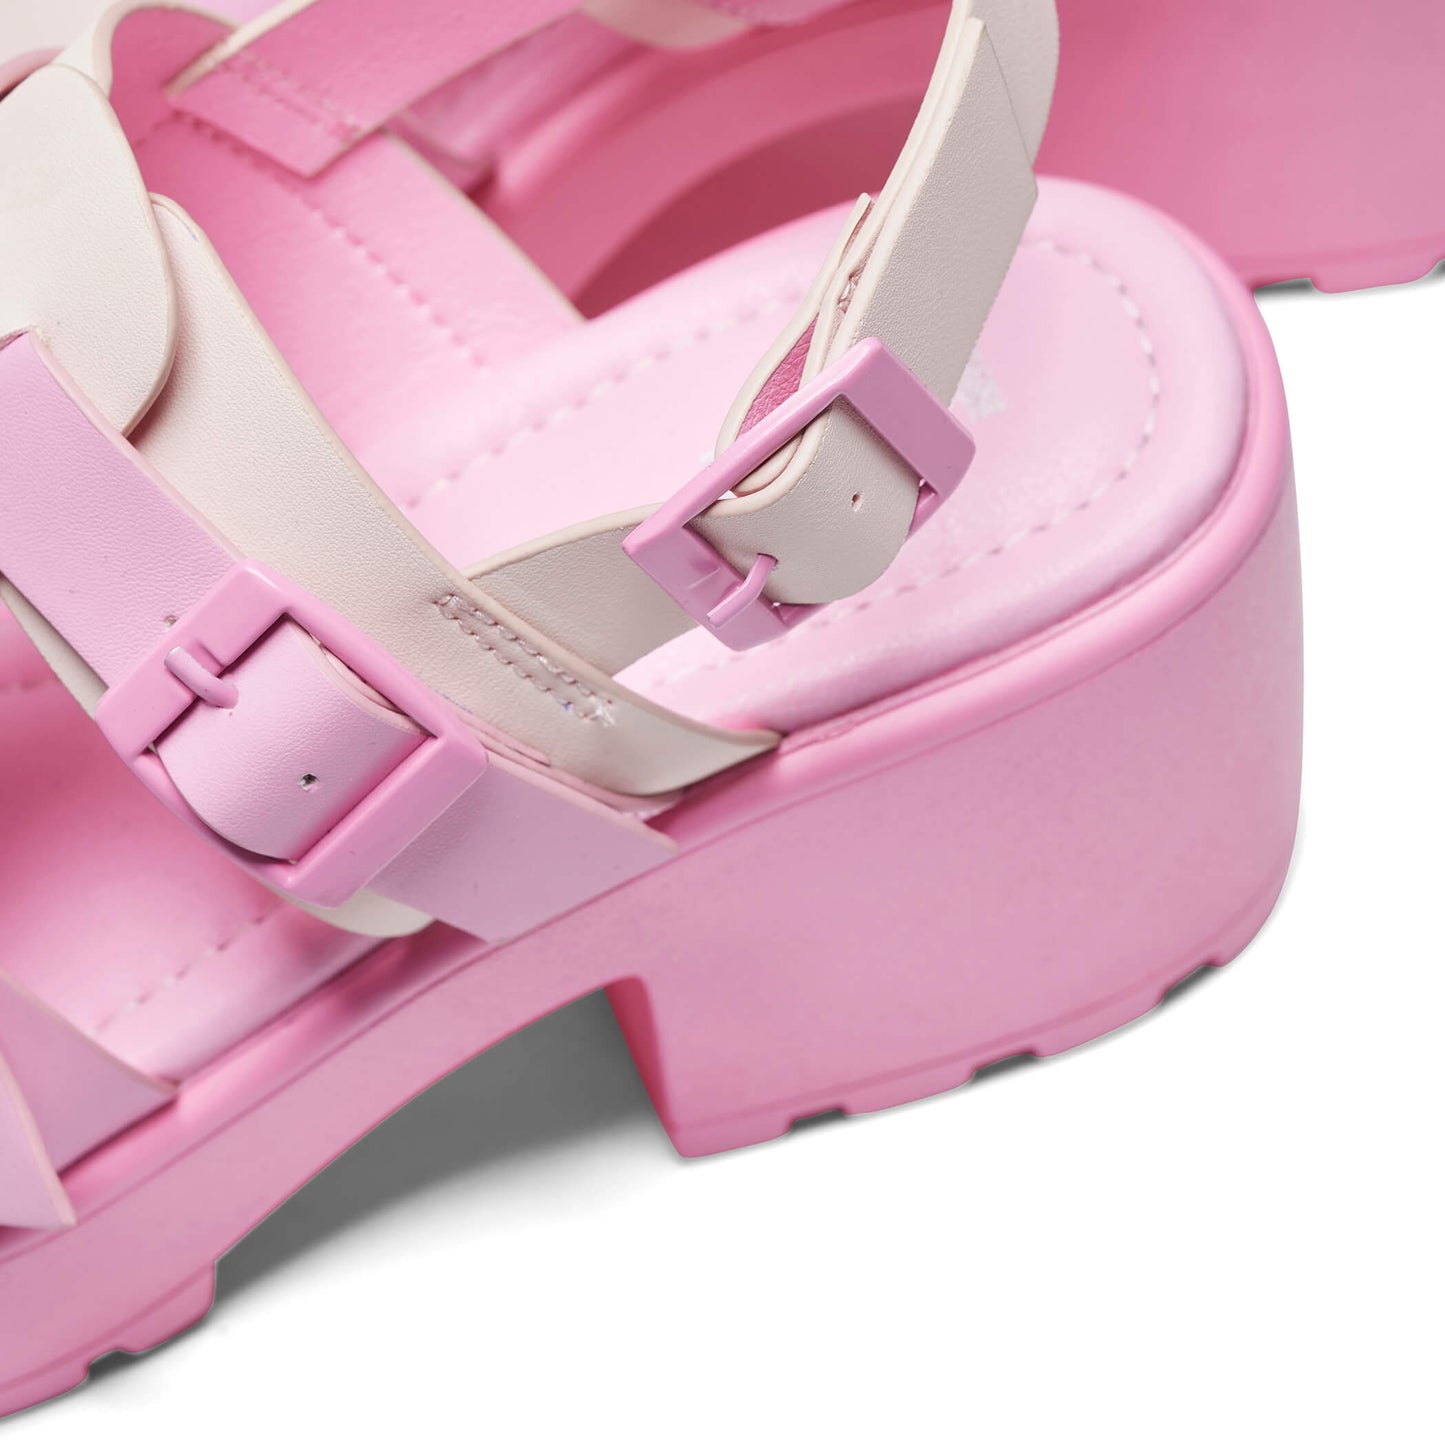 Sugar Season Chunky Buckle Sandals - Pink - Sandals - KOI Footwear - Pink - Buckle Detail